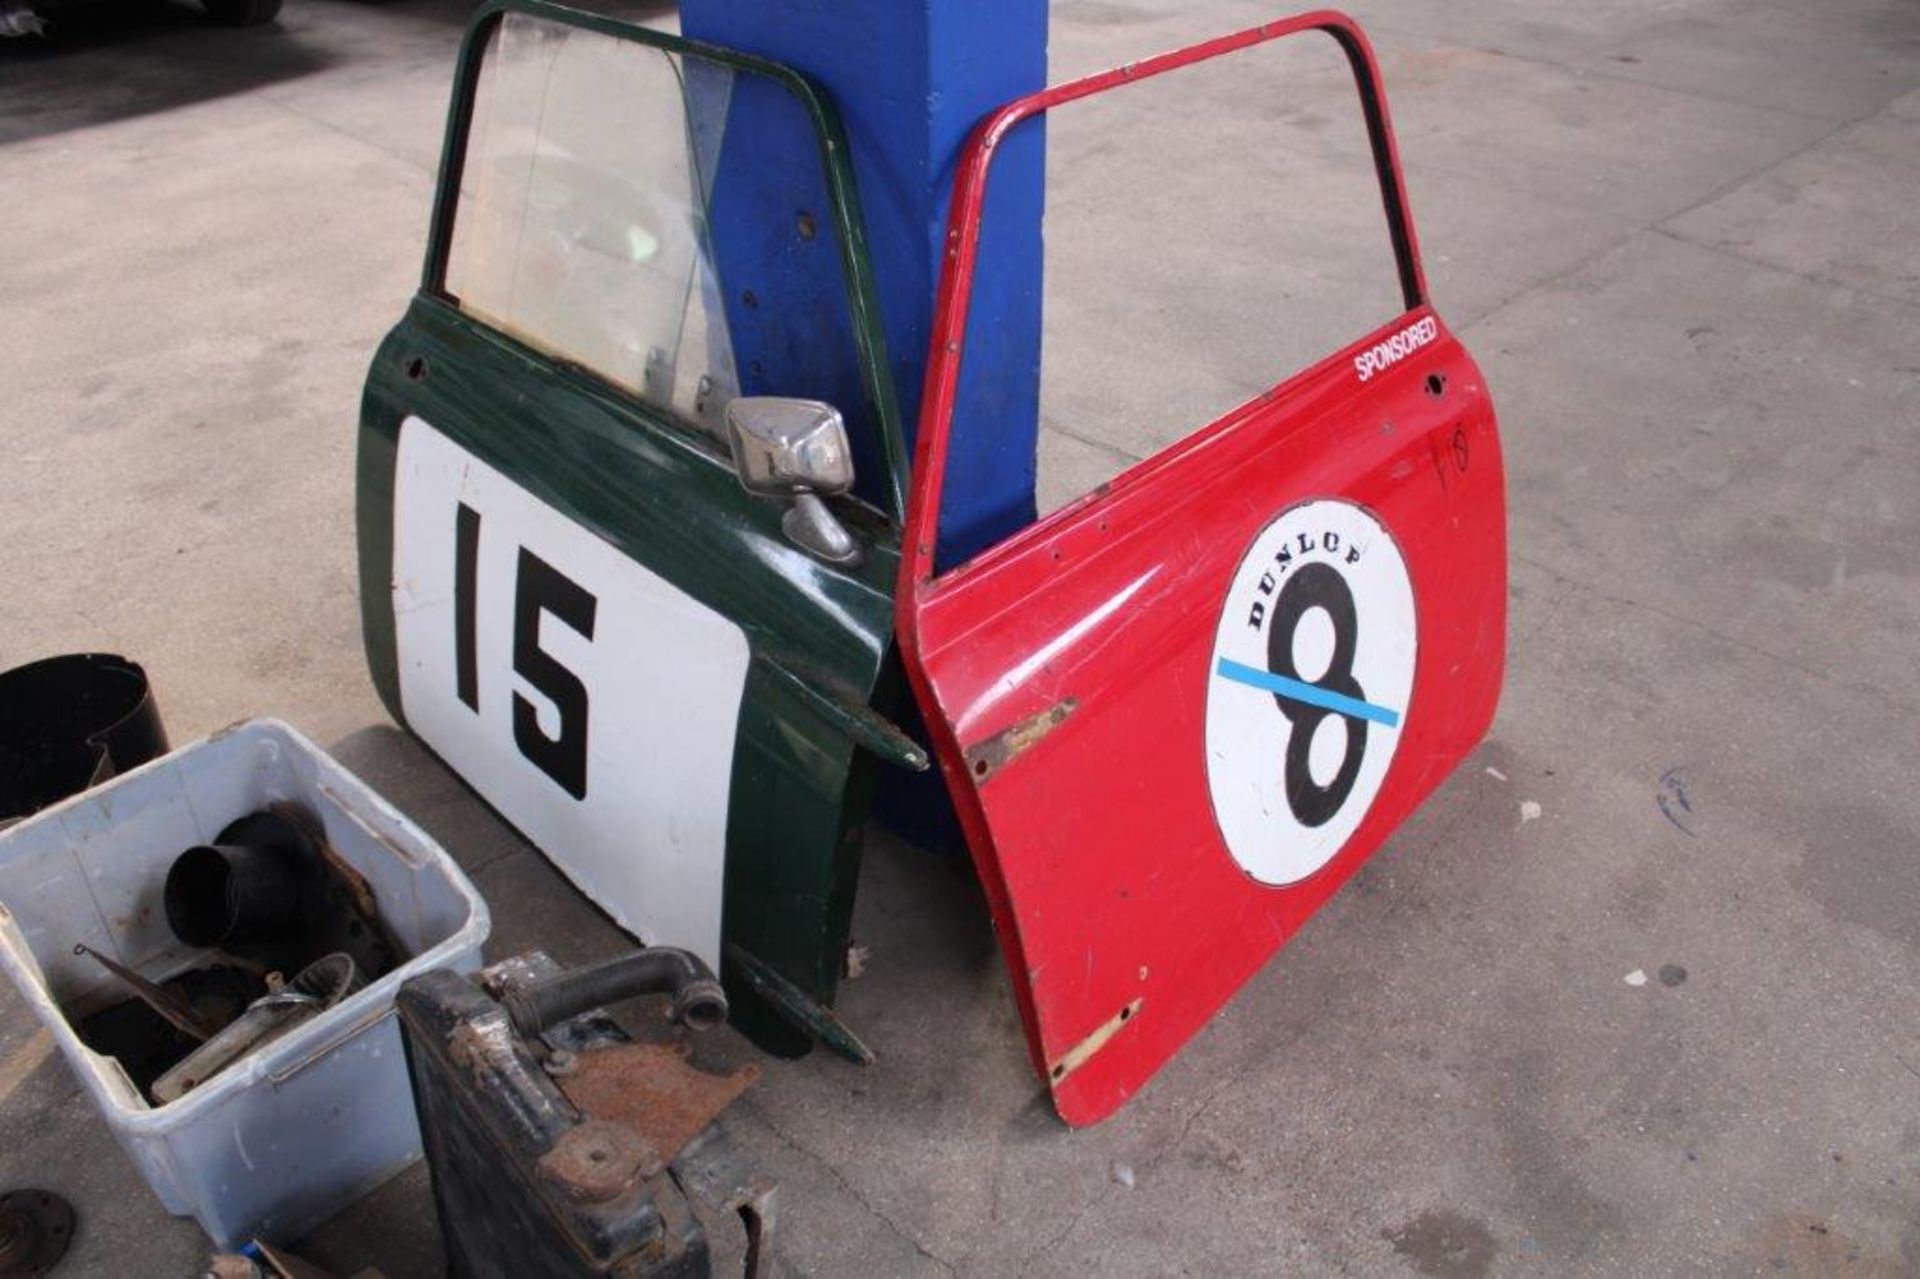 1967 Mini Cooper Ex Classic Race Car - Image 16 of 20